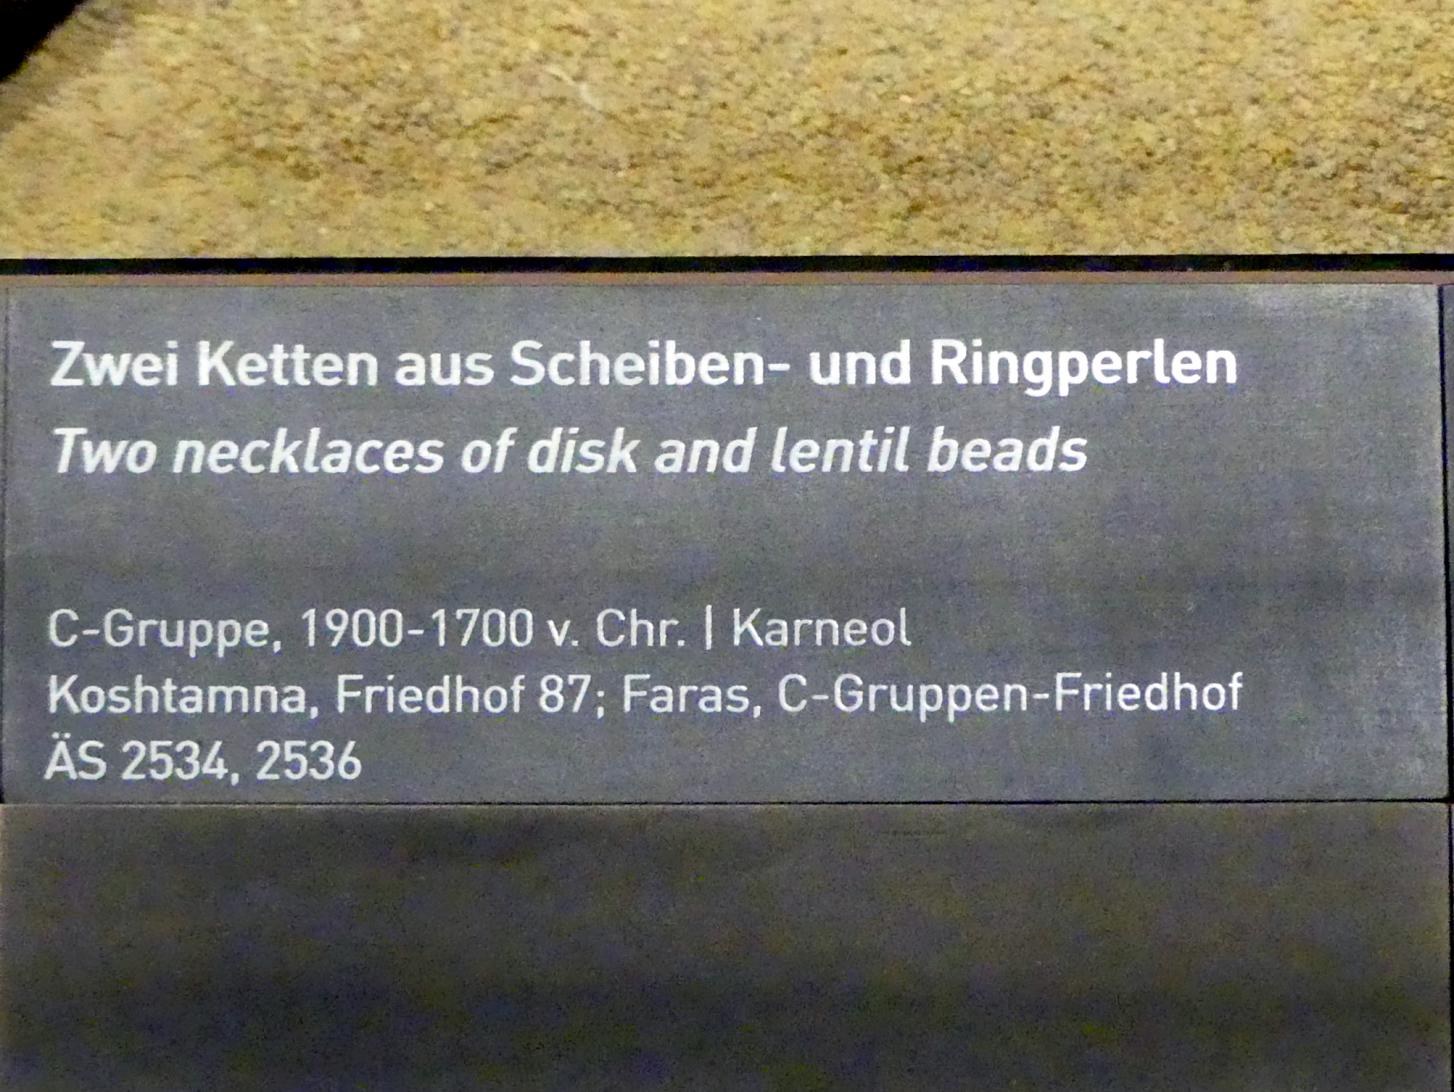 Kette aus Scheiben- und Ringperlen, C-Gruppe, 1900 - 1550 v. Chr., 1900 - 1700 v. Chr., Bild 2/2